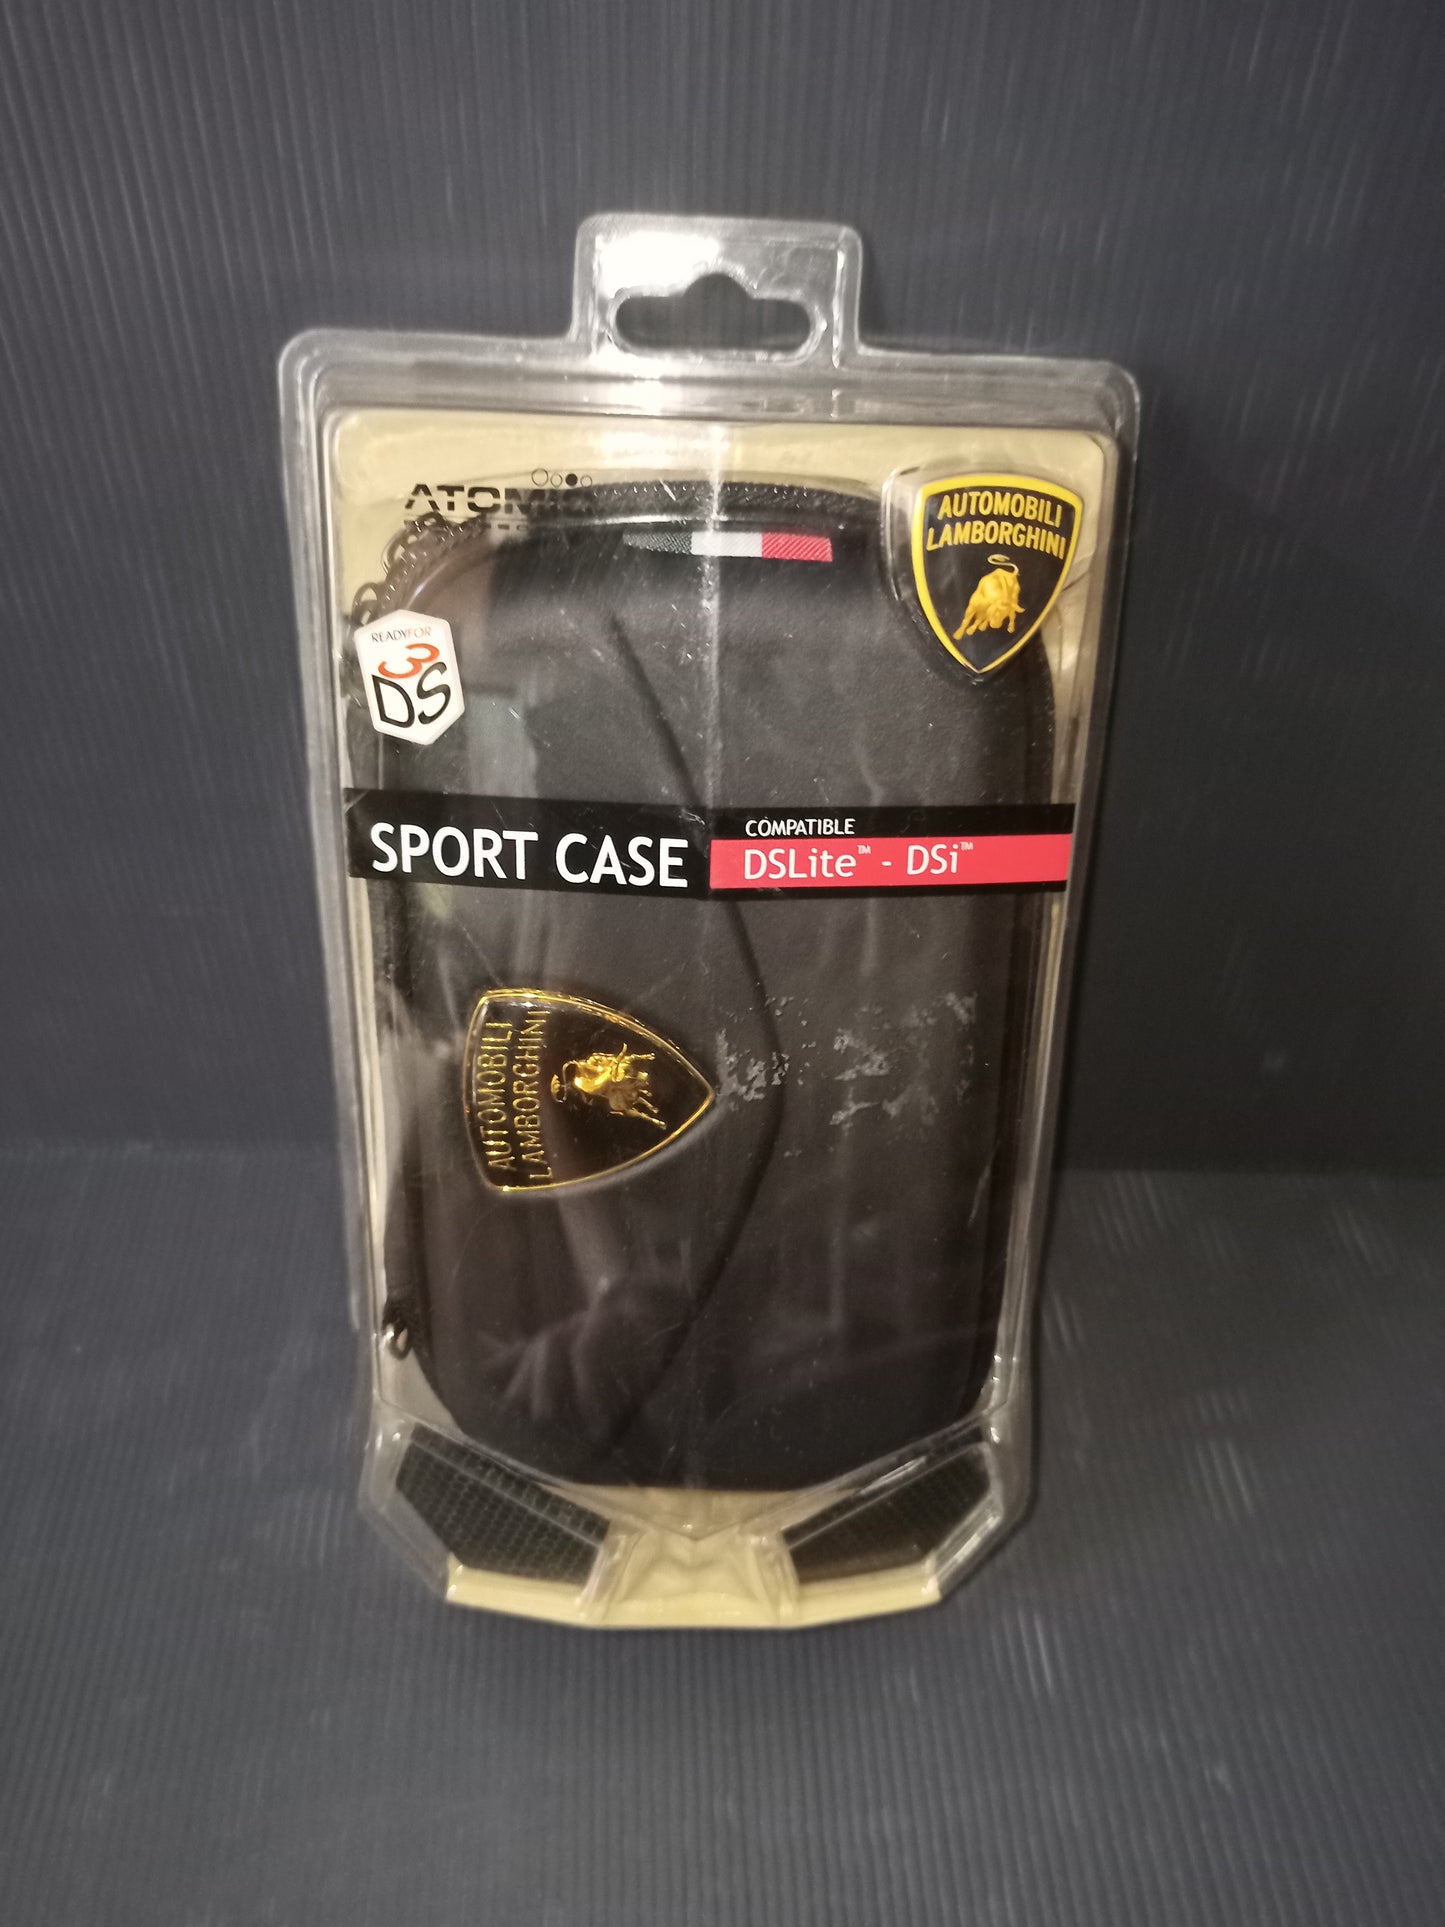 Sport Case Lamborghini case for Nintendo Ds Lite and Dsi